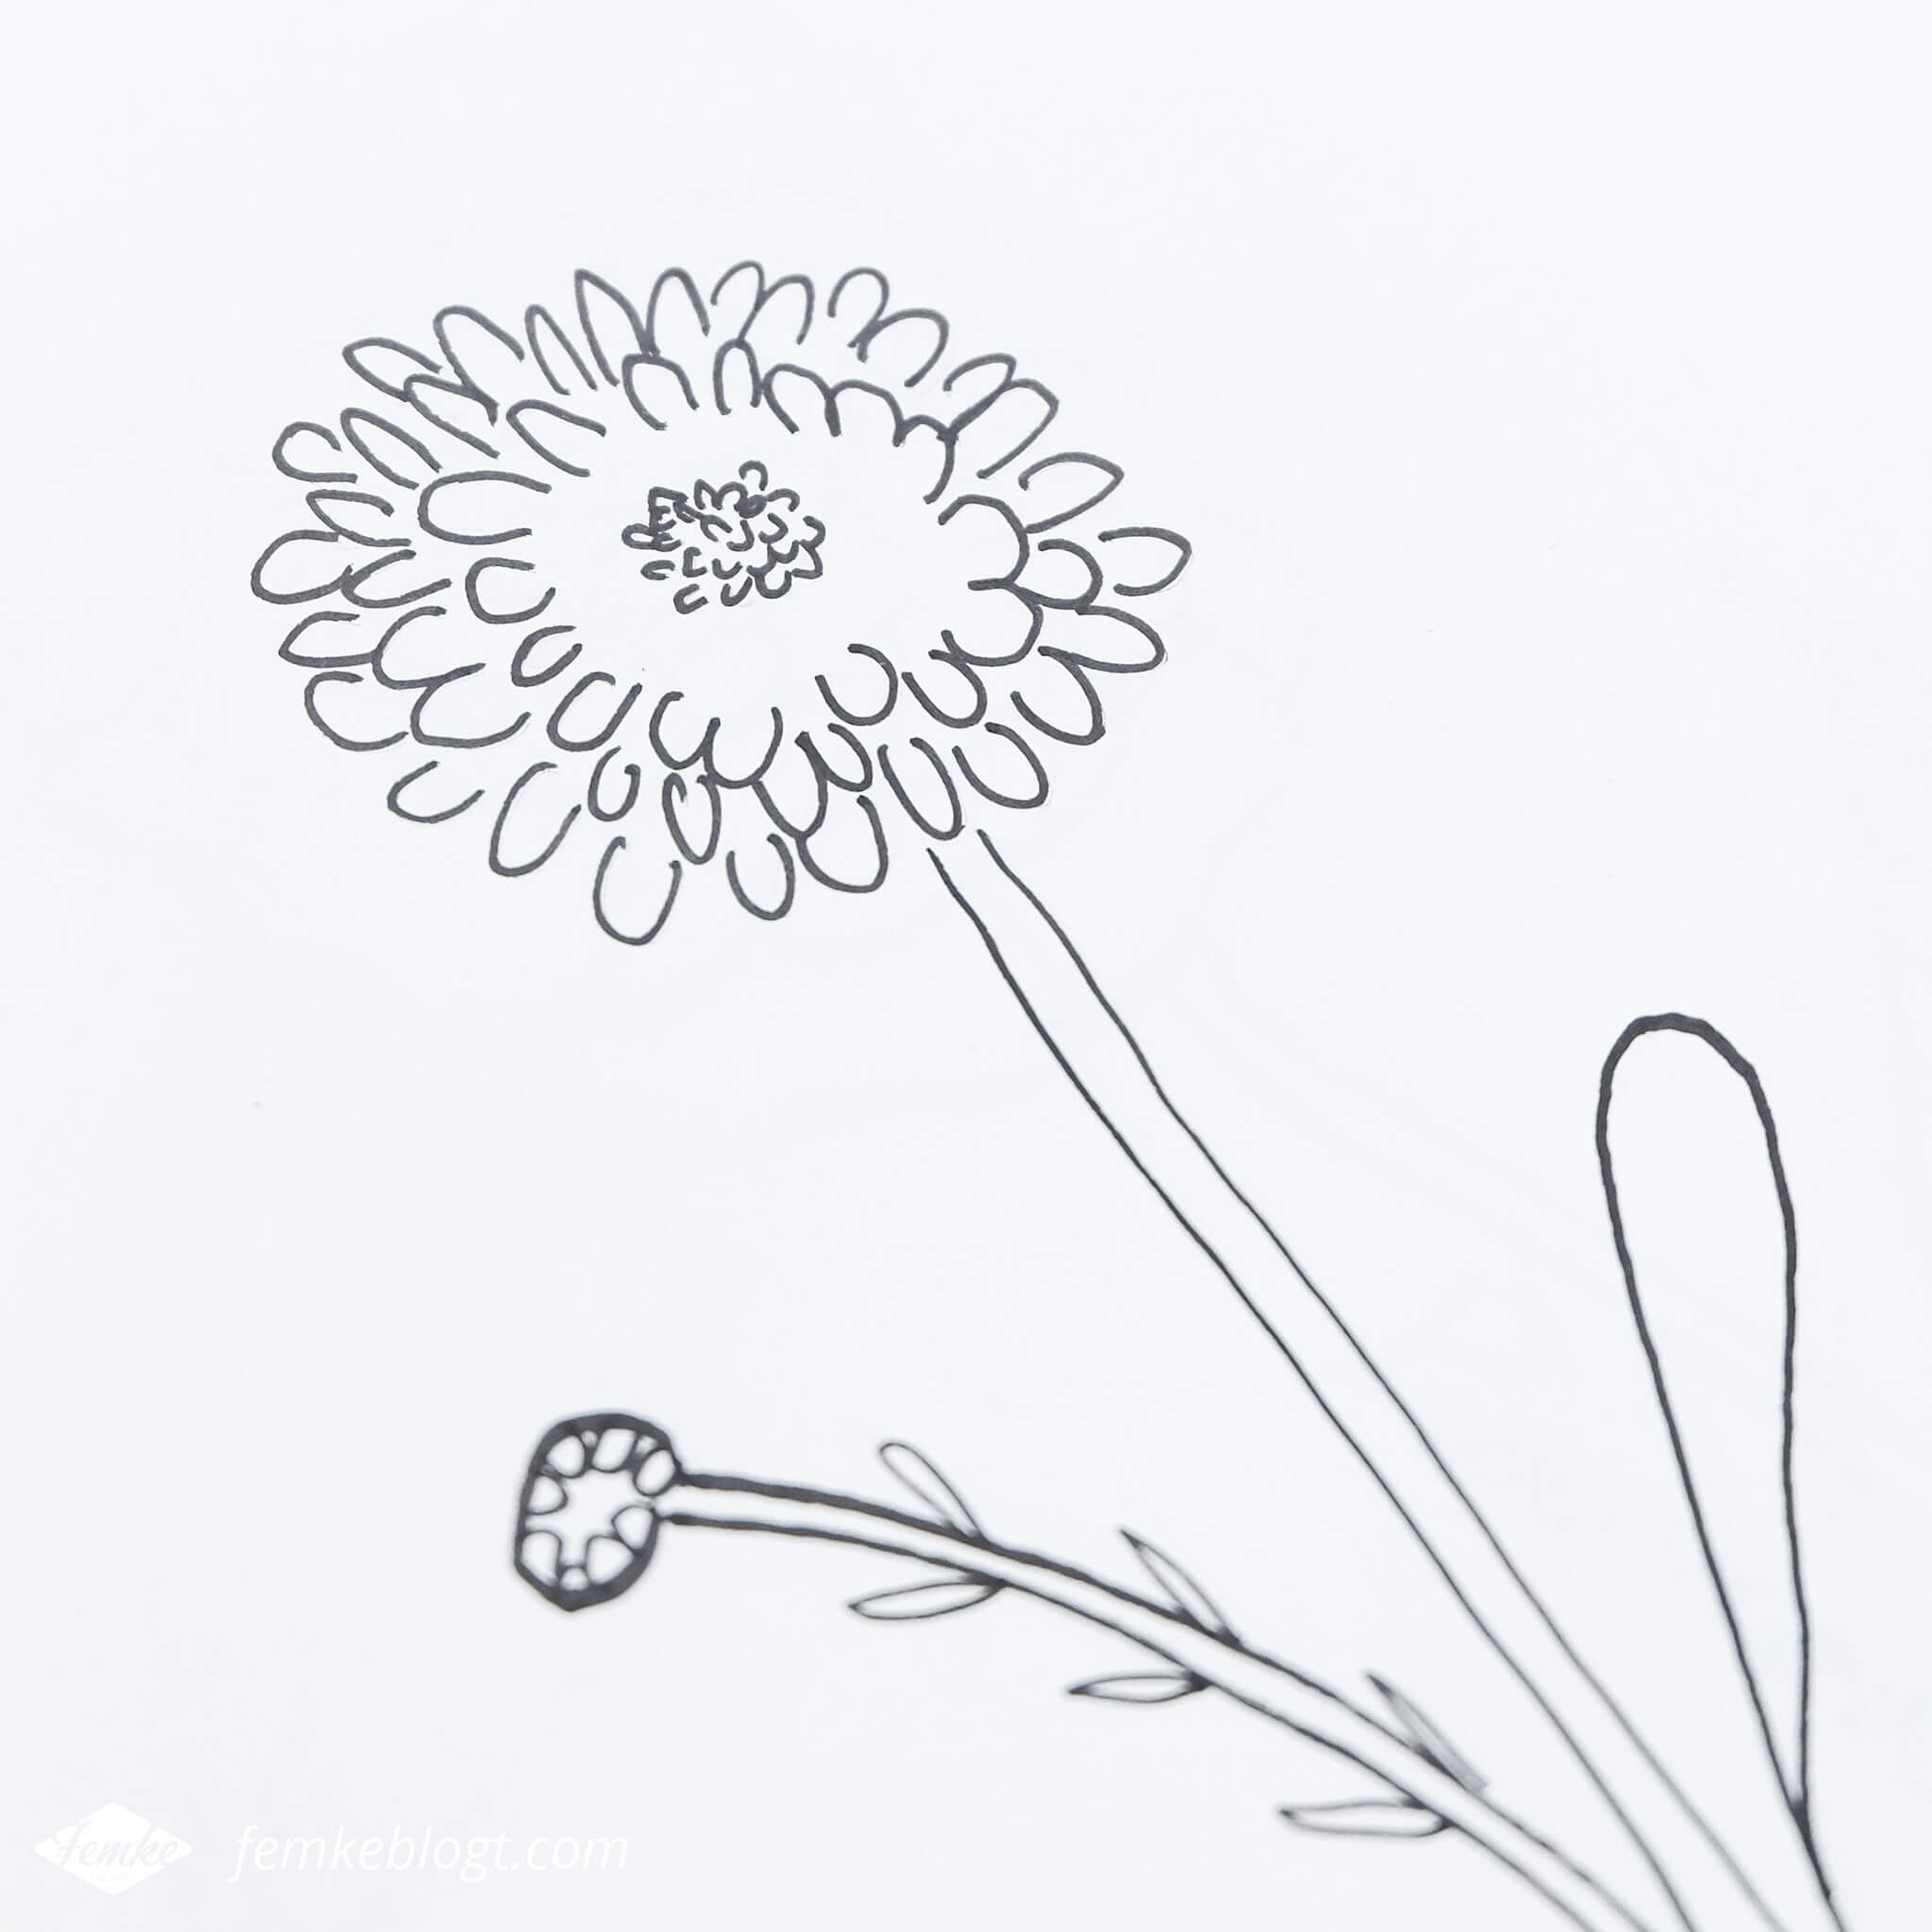 31 Dagen bloemen #3 | In deel 3 van de 31 Dagen bloemen serie gaan we de chrysant tekenen